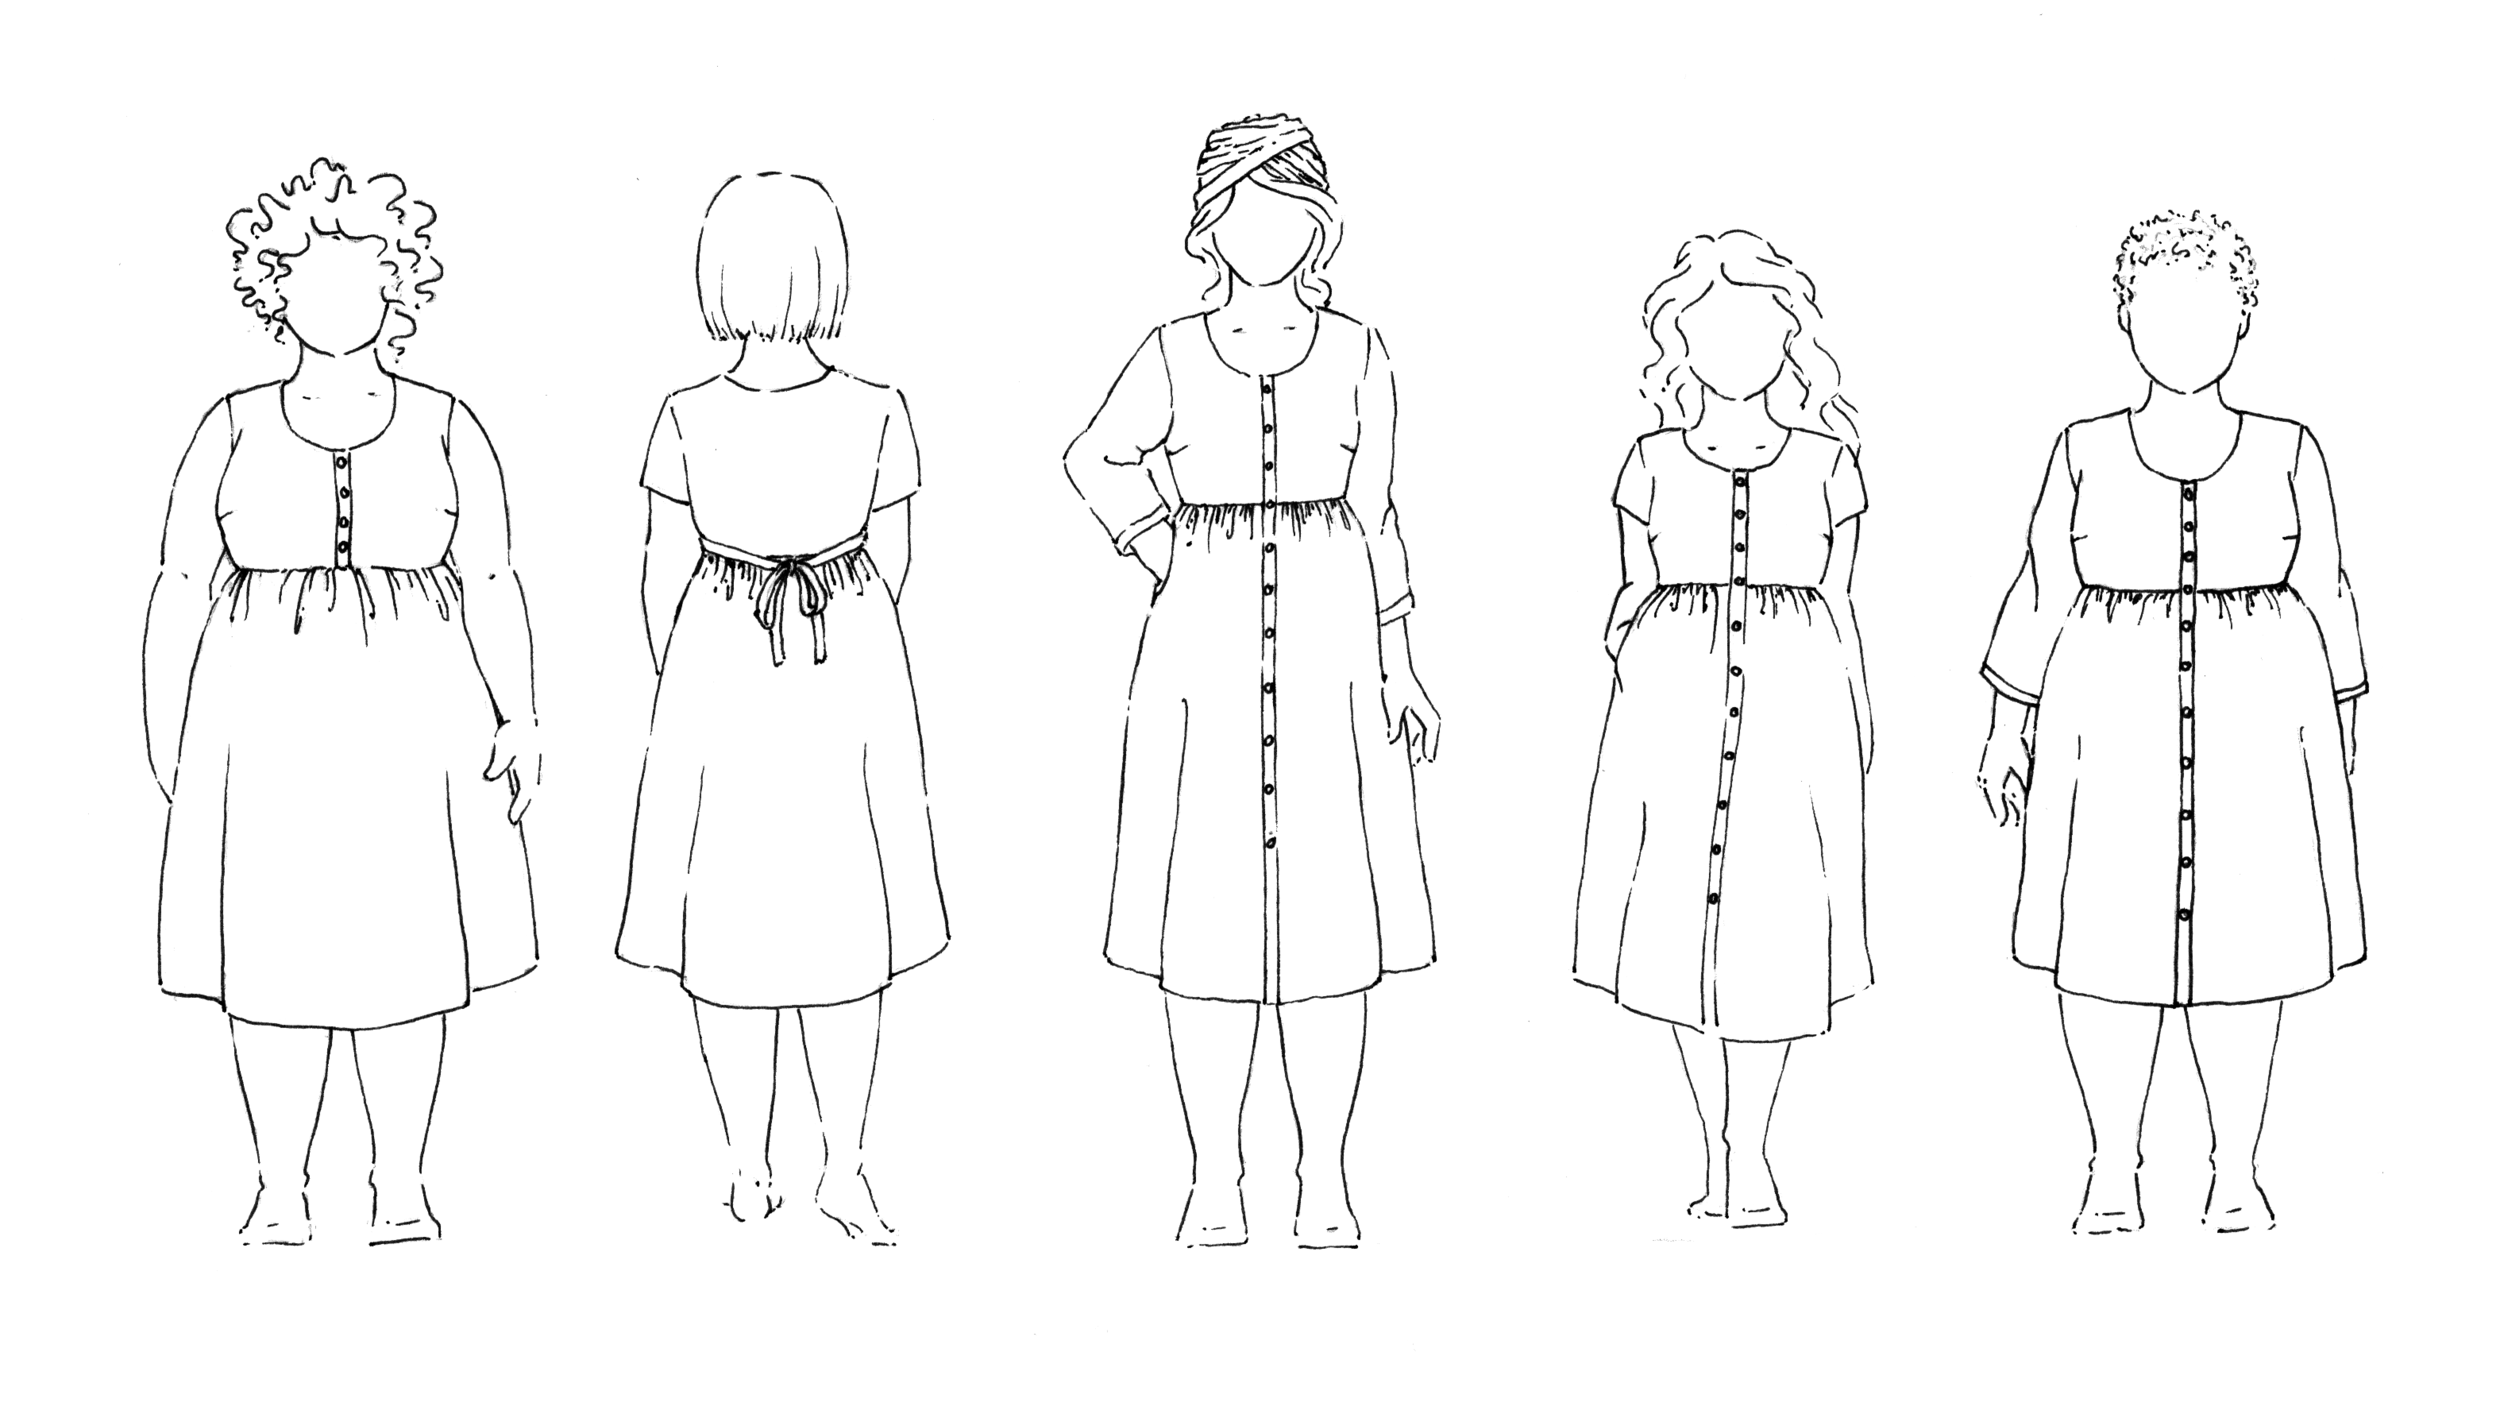 Sew Liberated Hinterland Dress Sewing Pattern